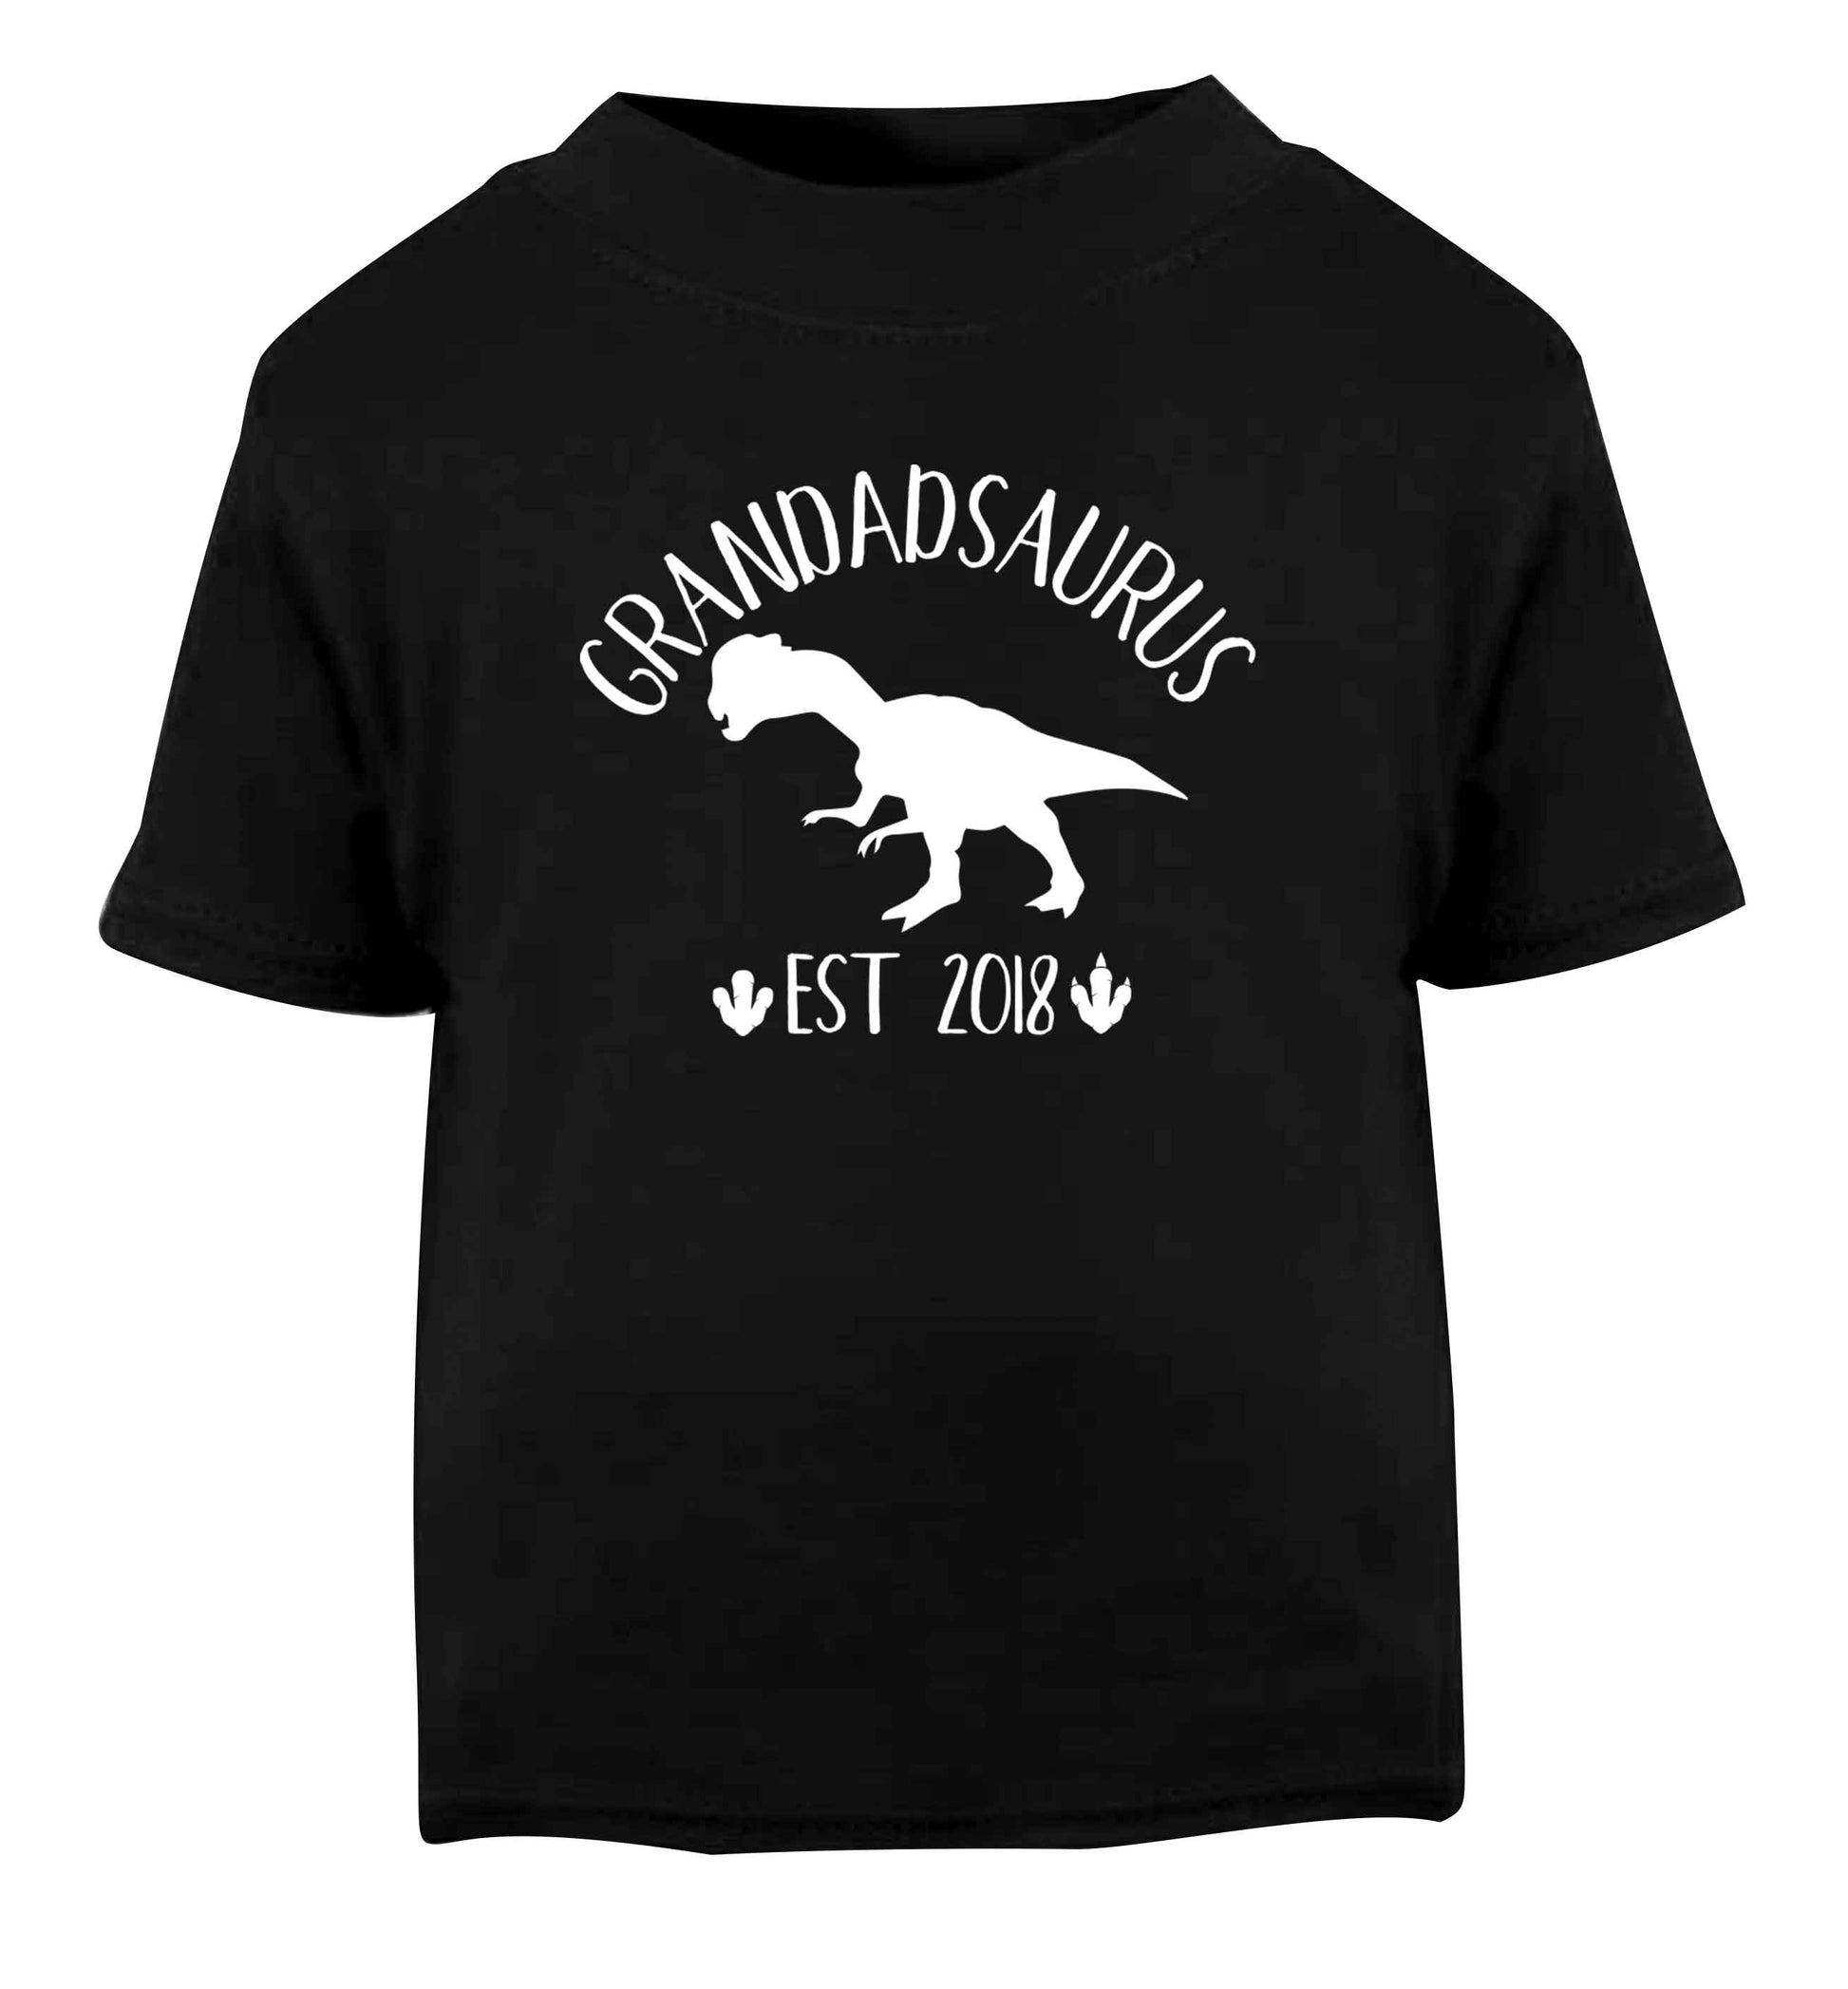 Personalised grandadsaurus since (custom date) Black Baby Toddler Tshirt 2 years